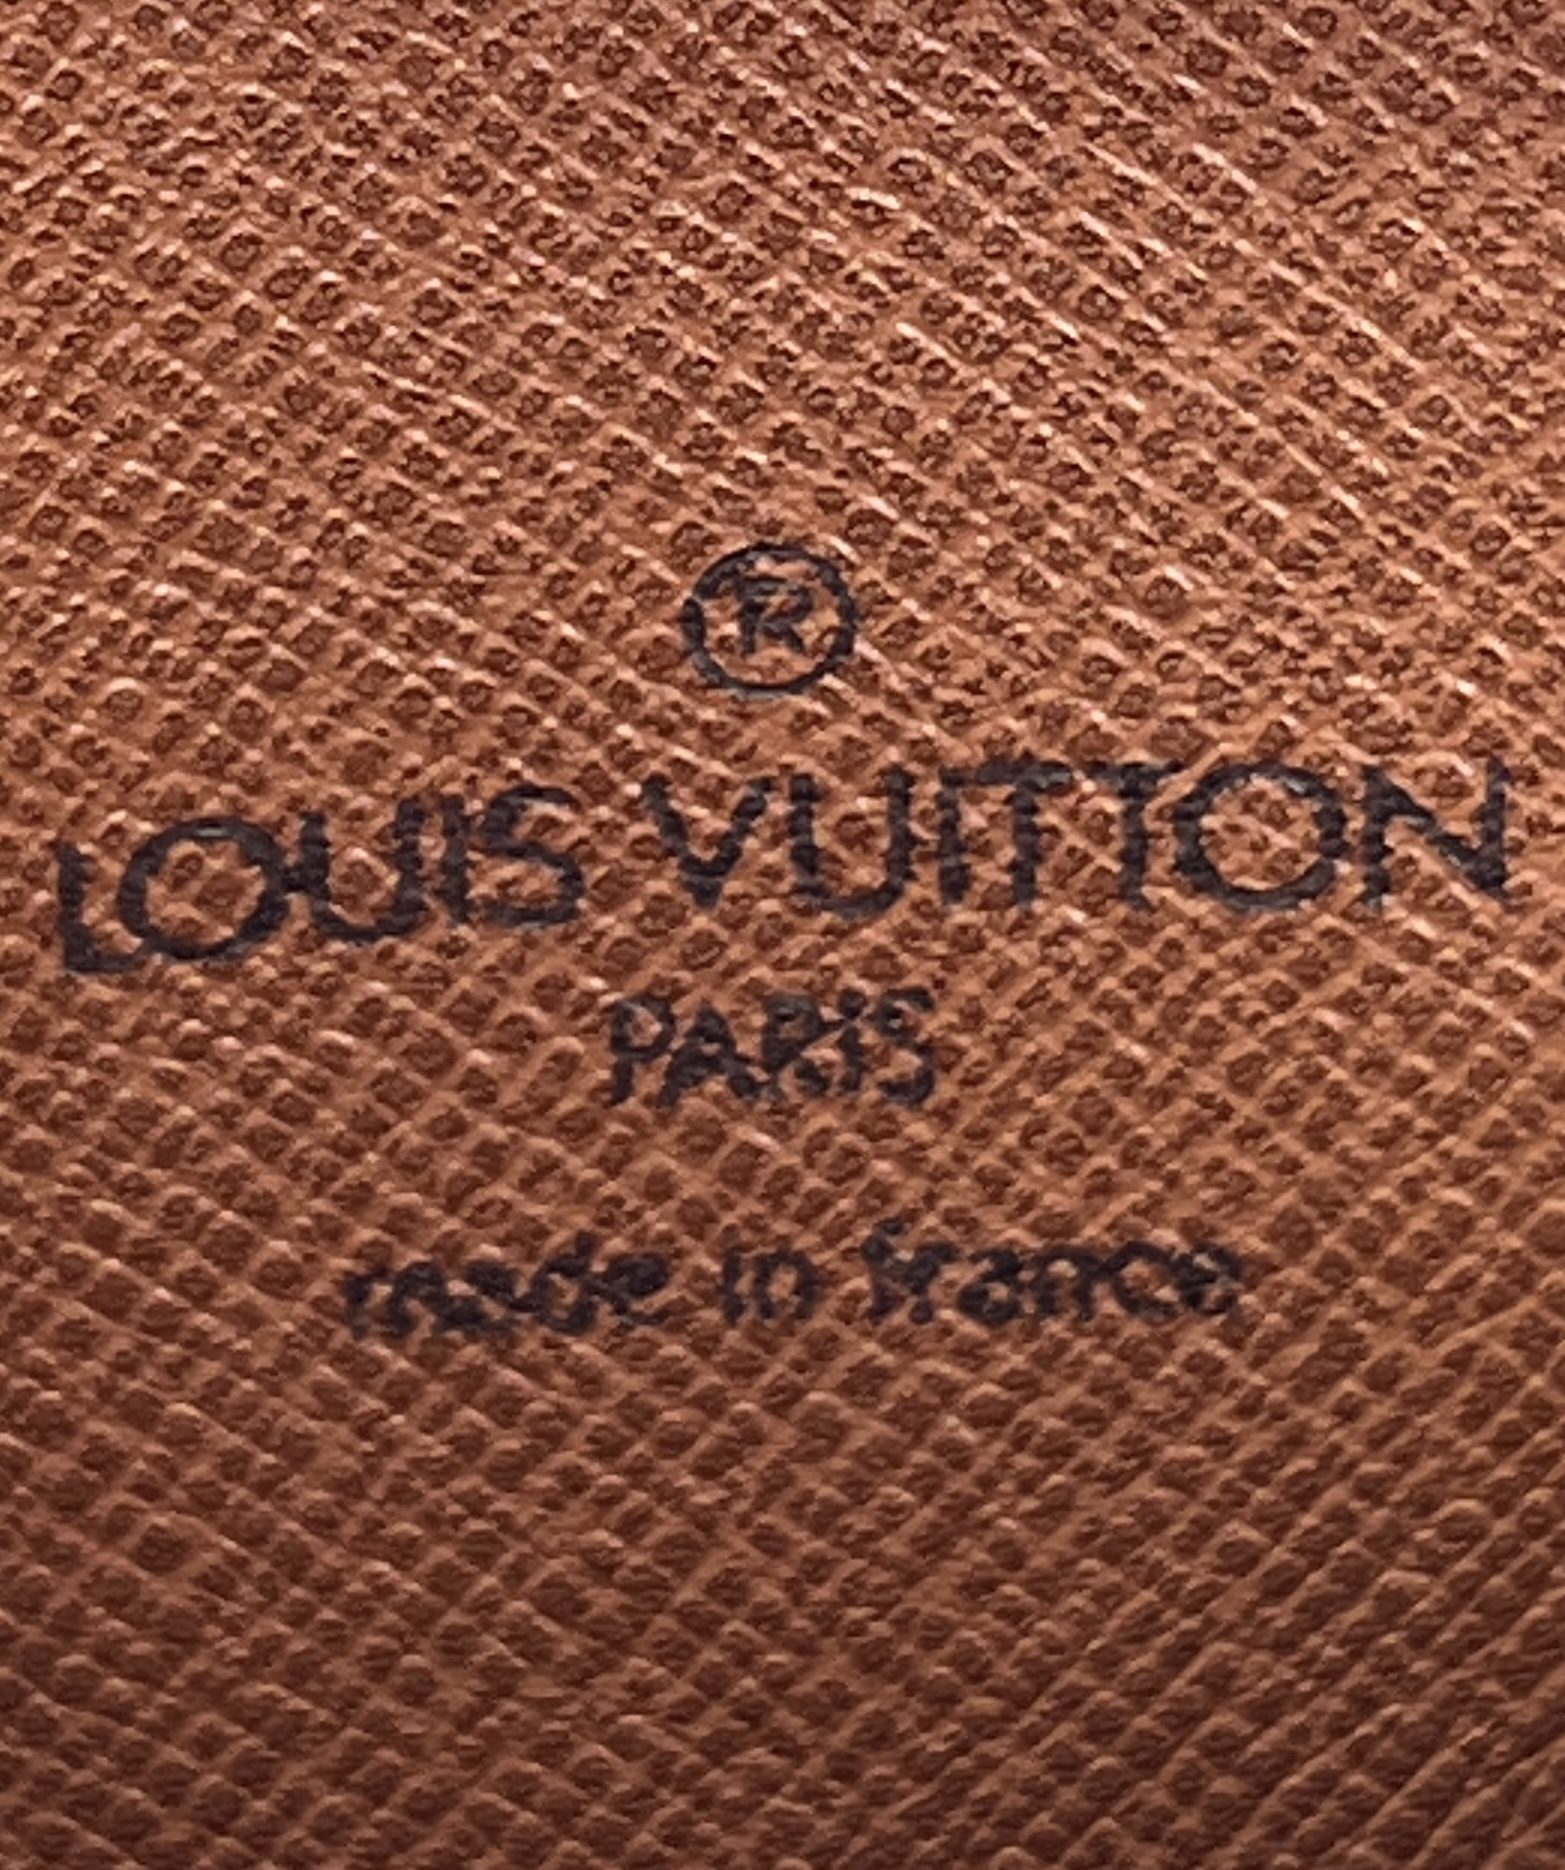 Louis Vuitton Apple watch face 